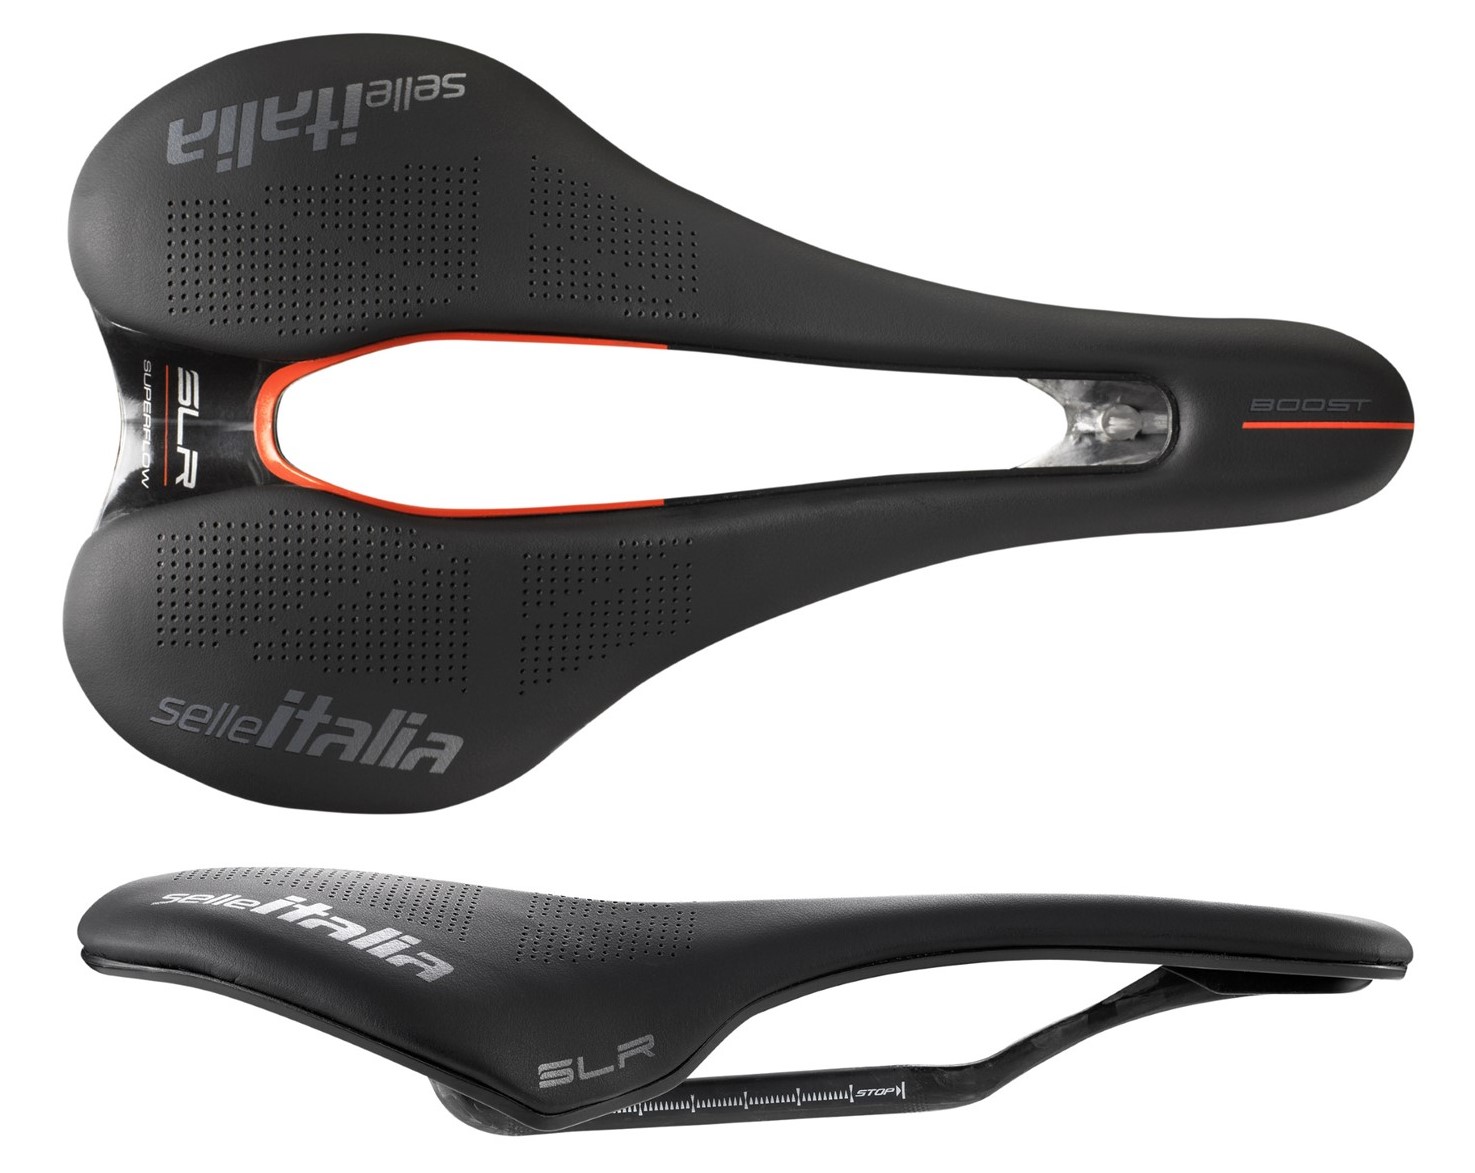 超お徳用 Selle Italia セライタリア SLR Kit Carbonio Saddle サドル with Carbon Rails カーボン  レール-Black スポーツ・アウトドア